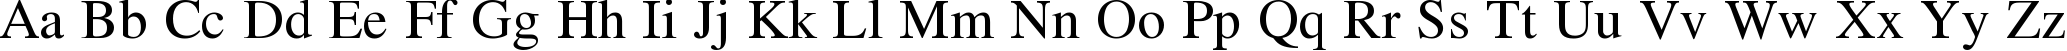 Пример написания английского алфавита шрифтом Nazli